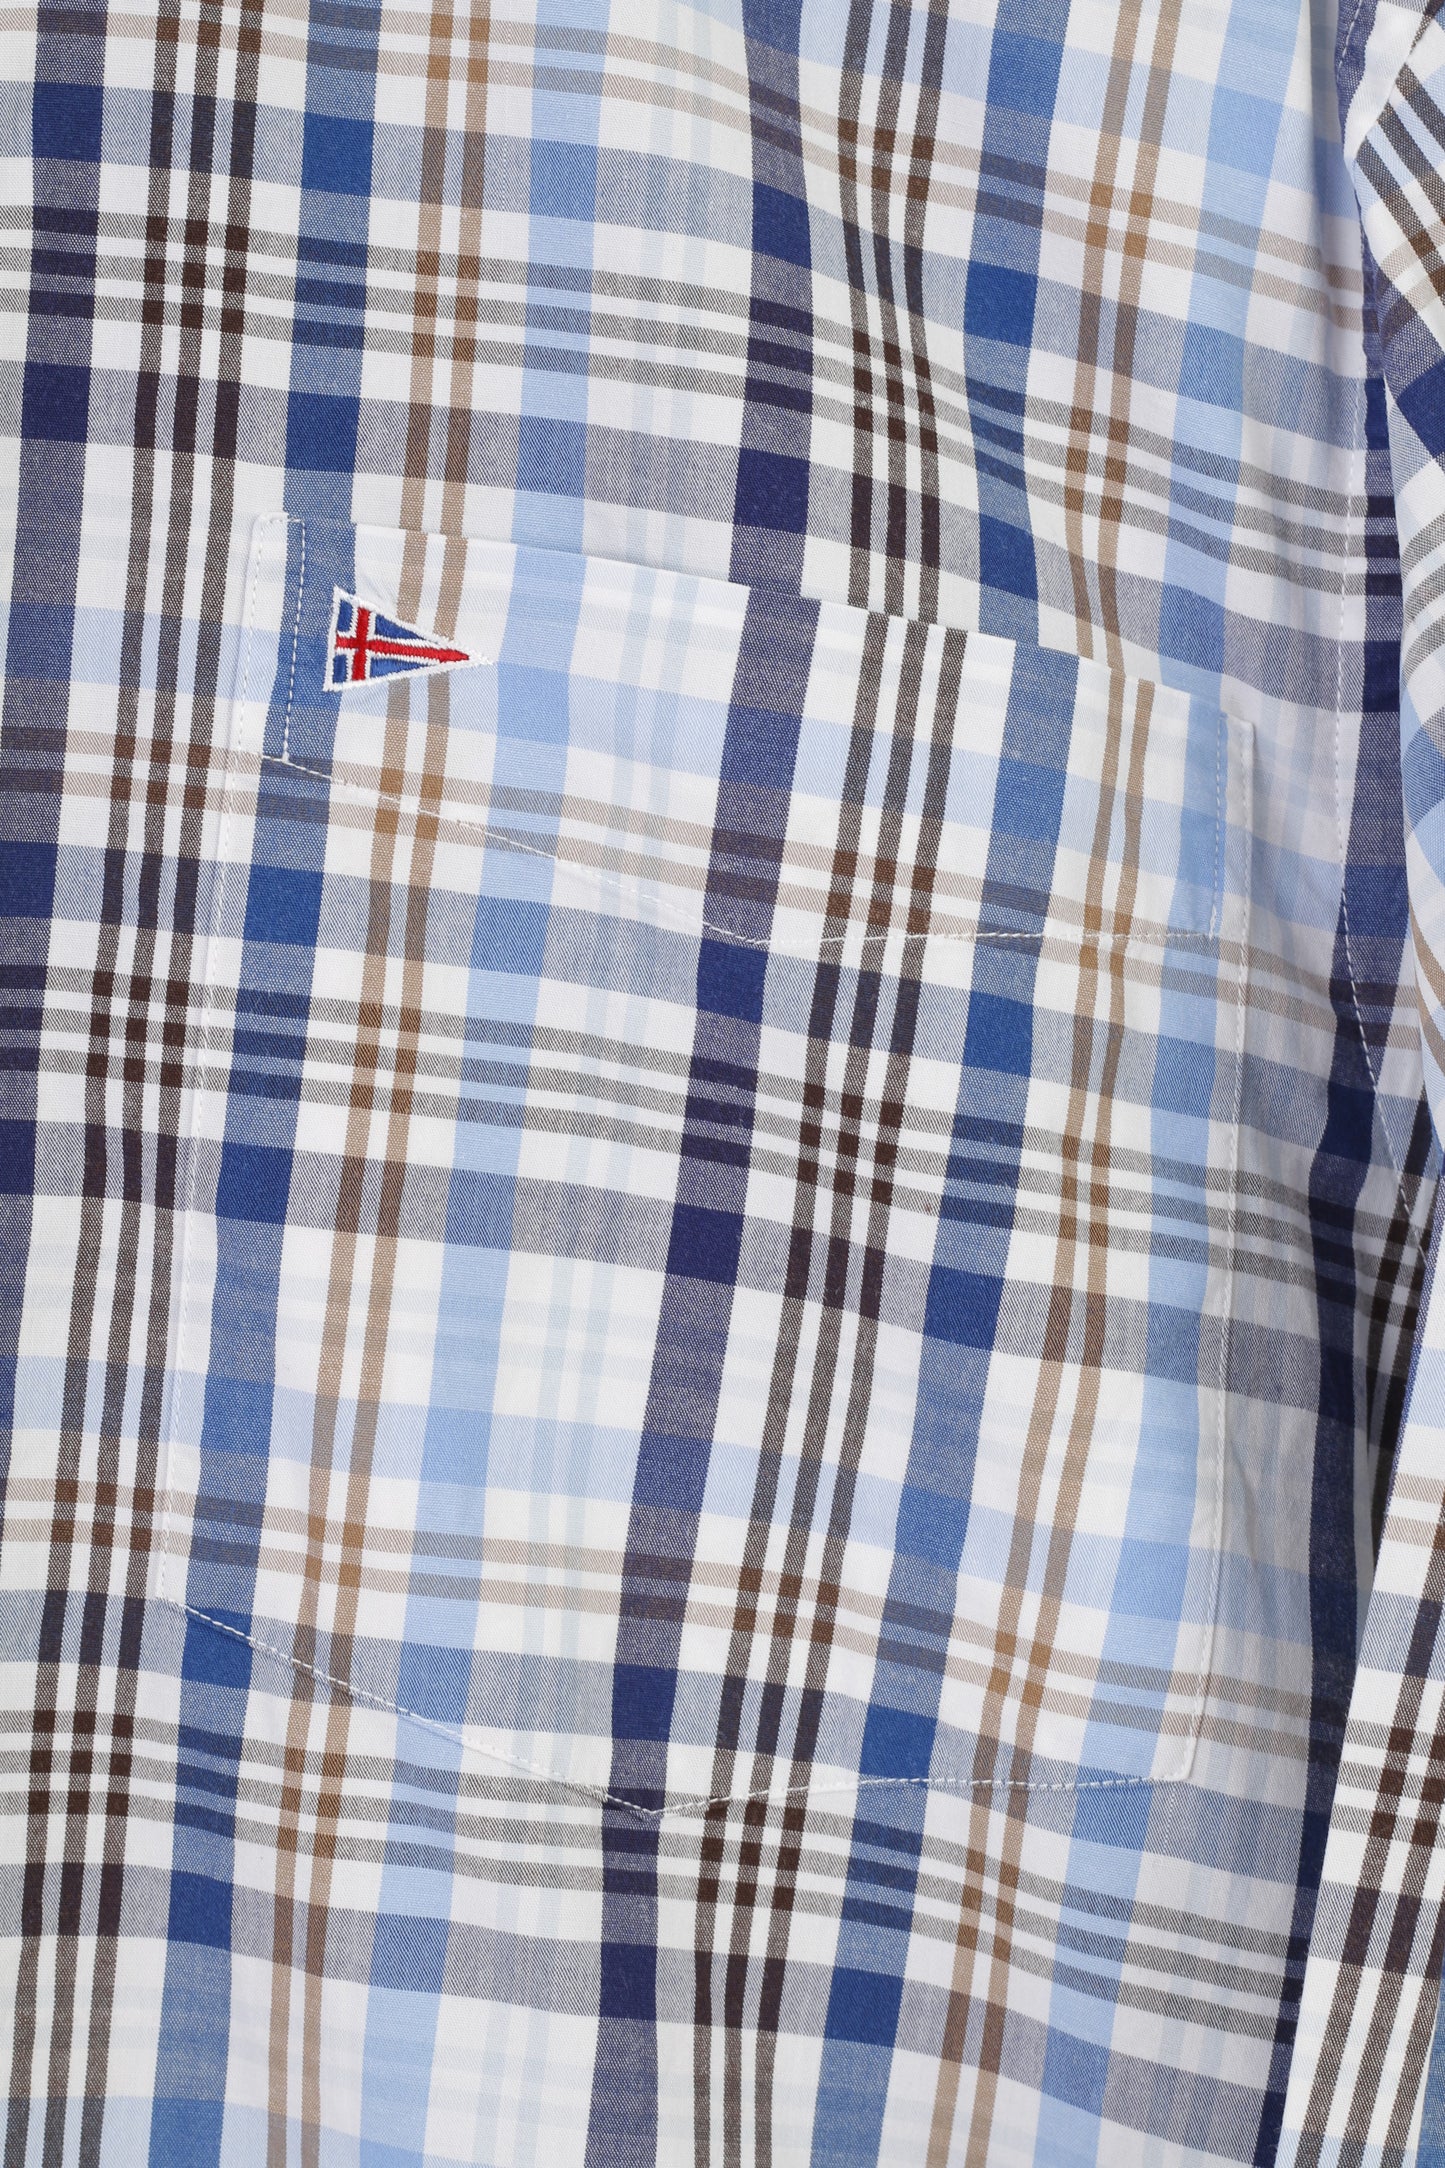 Paul R. Smith Camicia casual da uomo M. Top vestibilità regolare a maniche lunghe in cotone a quadri blu